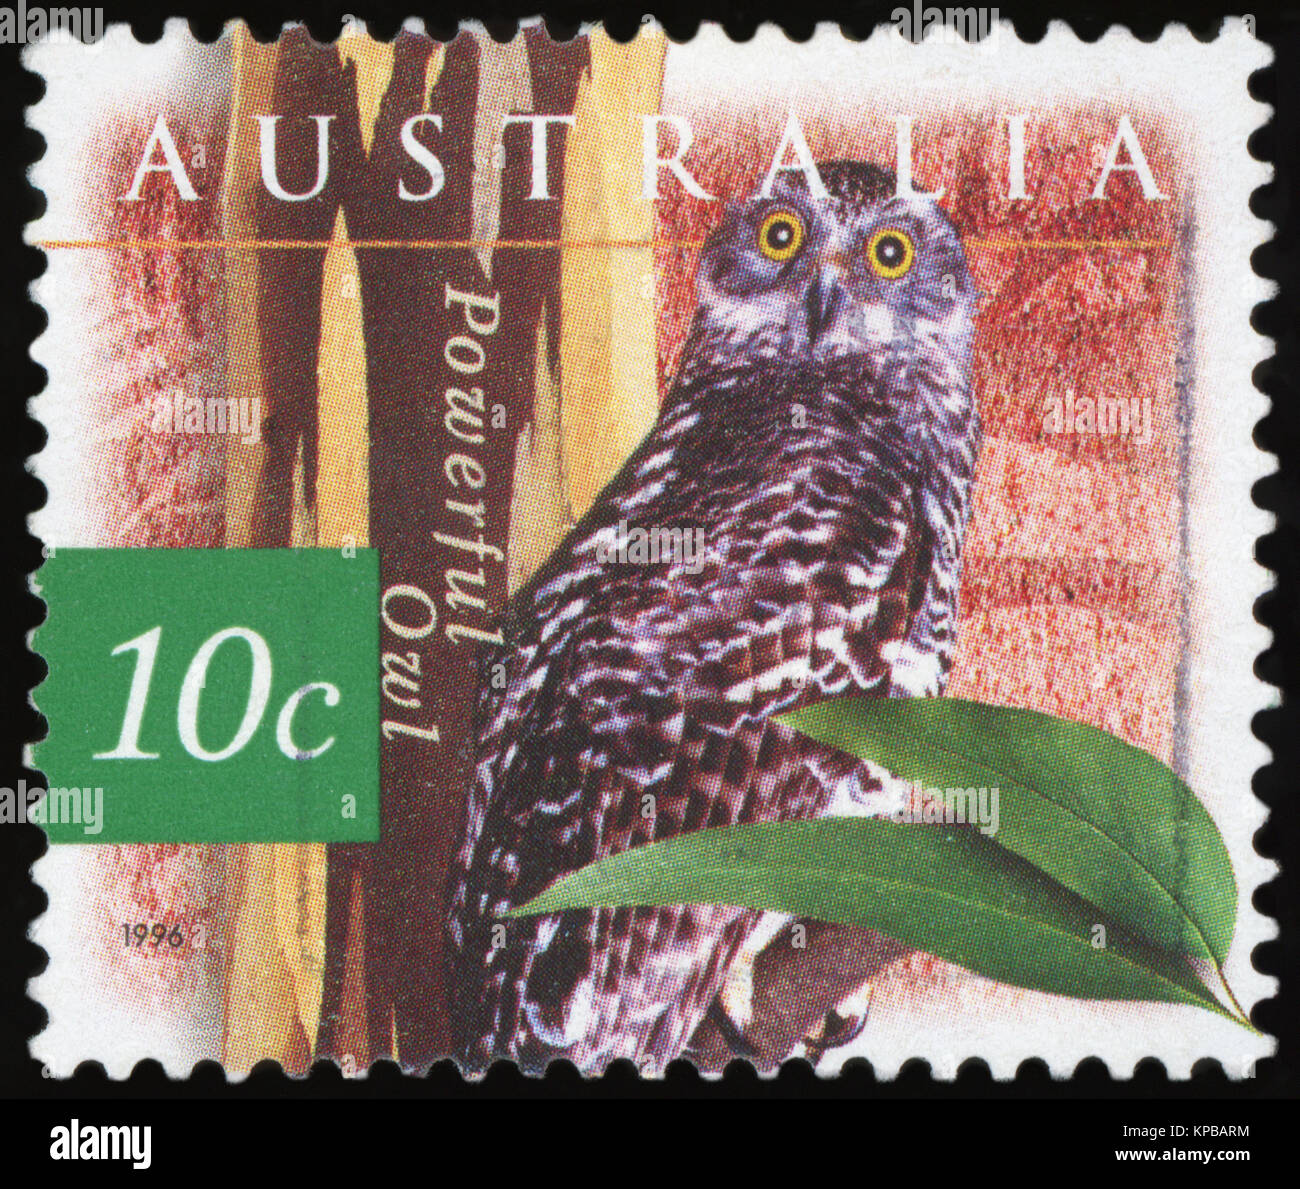 Australien - ca. 1996: eine stornierte Briefmarke aus Australien, leistungsstarke Eule, 1996 ausgestellt. Stockfoto